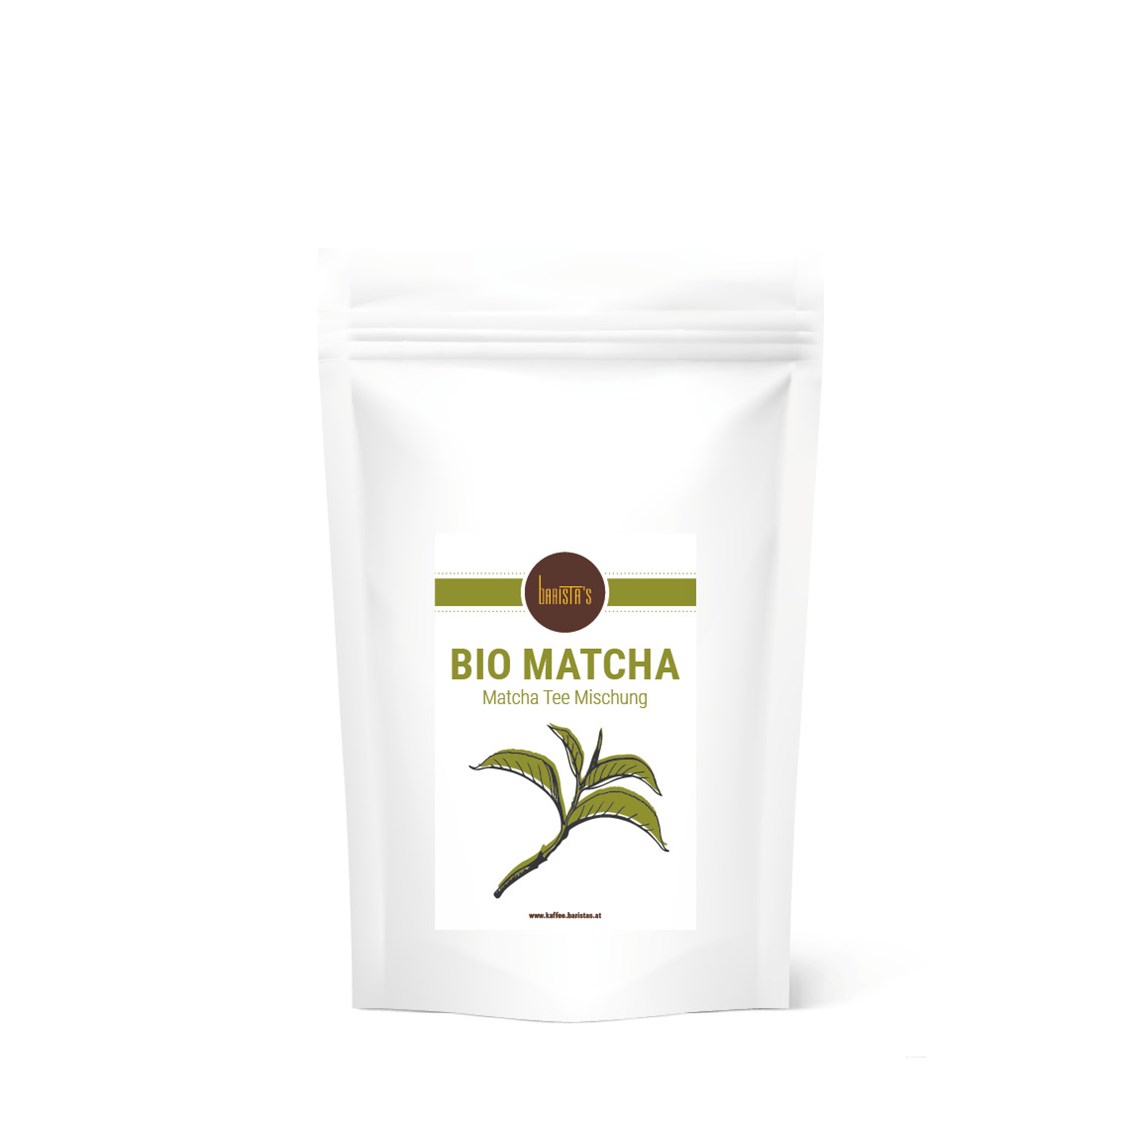 Unternehmen: Unser Bio Matcha Latte Mix lässt sich herrlich einfach, die köstlichsten Variationen dieses Getränks auch zu Hause herstellen.

2 Kaffeelöffel mit 0,3l einer heißen Milch Deiner Wahl aufgießen, umrühren und fertig. Schmeckt auch großartig als Kaltgetränk oder pepp einfach Deinen Smoothie mit etwas grüner Power auf. - Barista’s Kaffee 